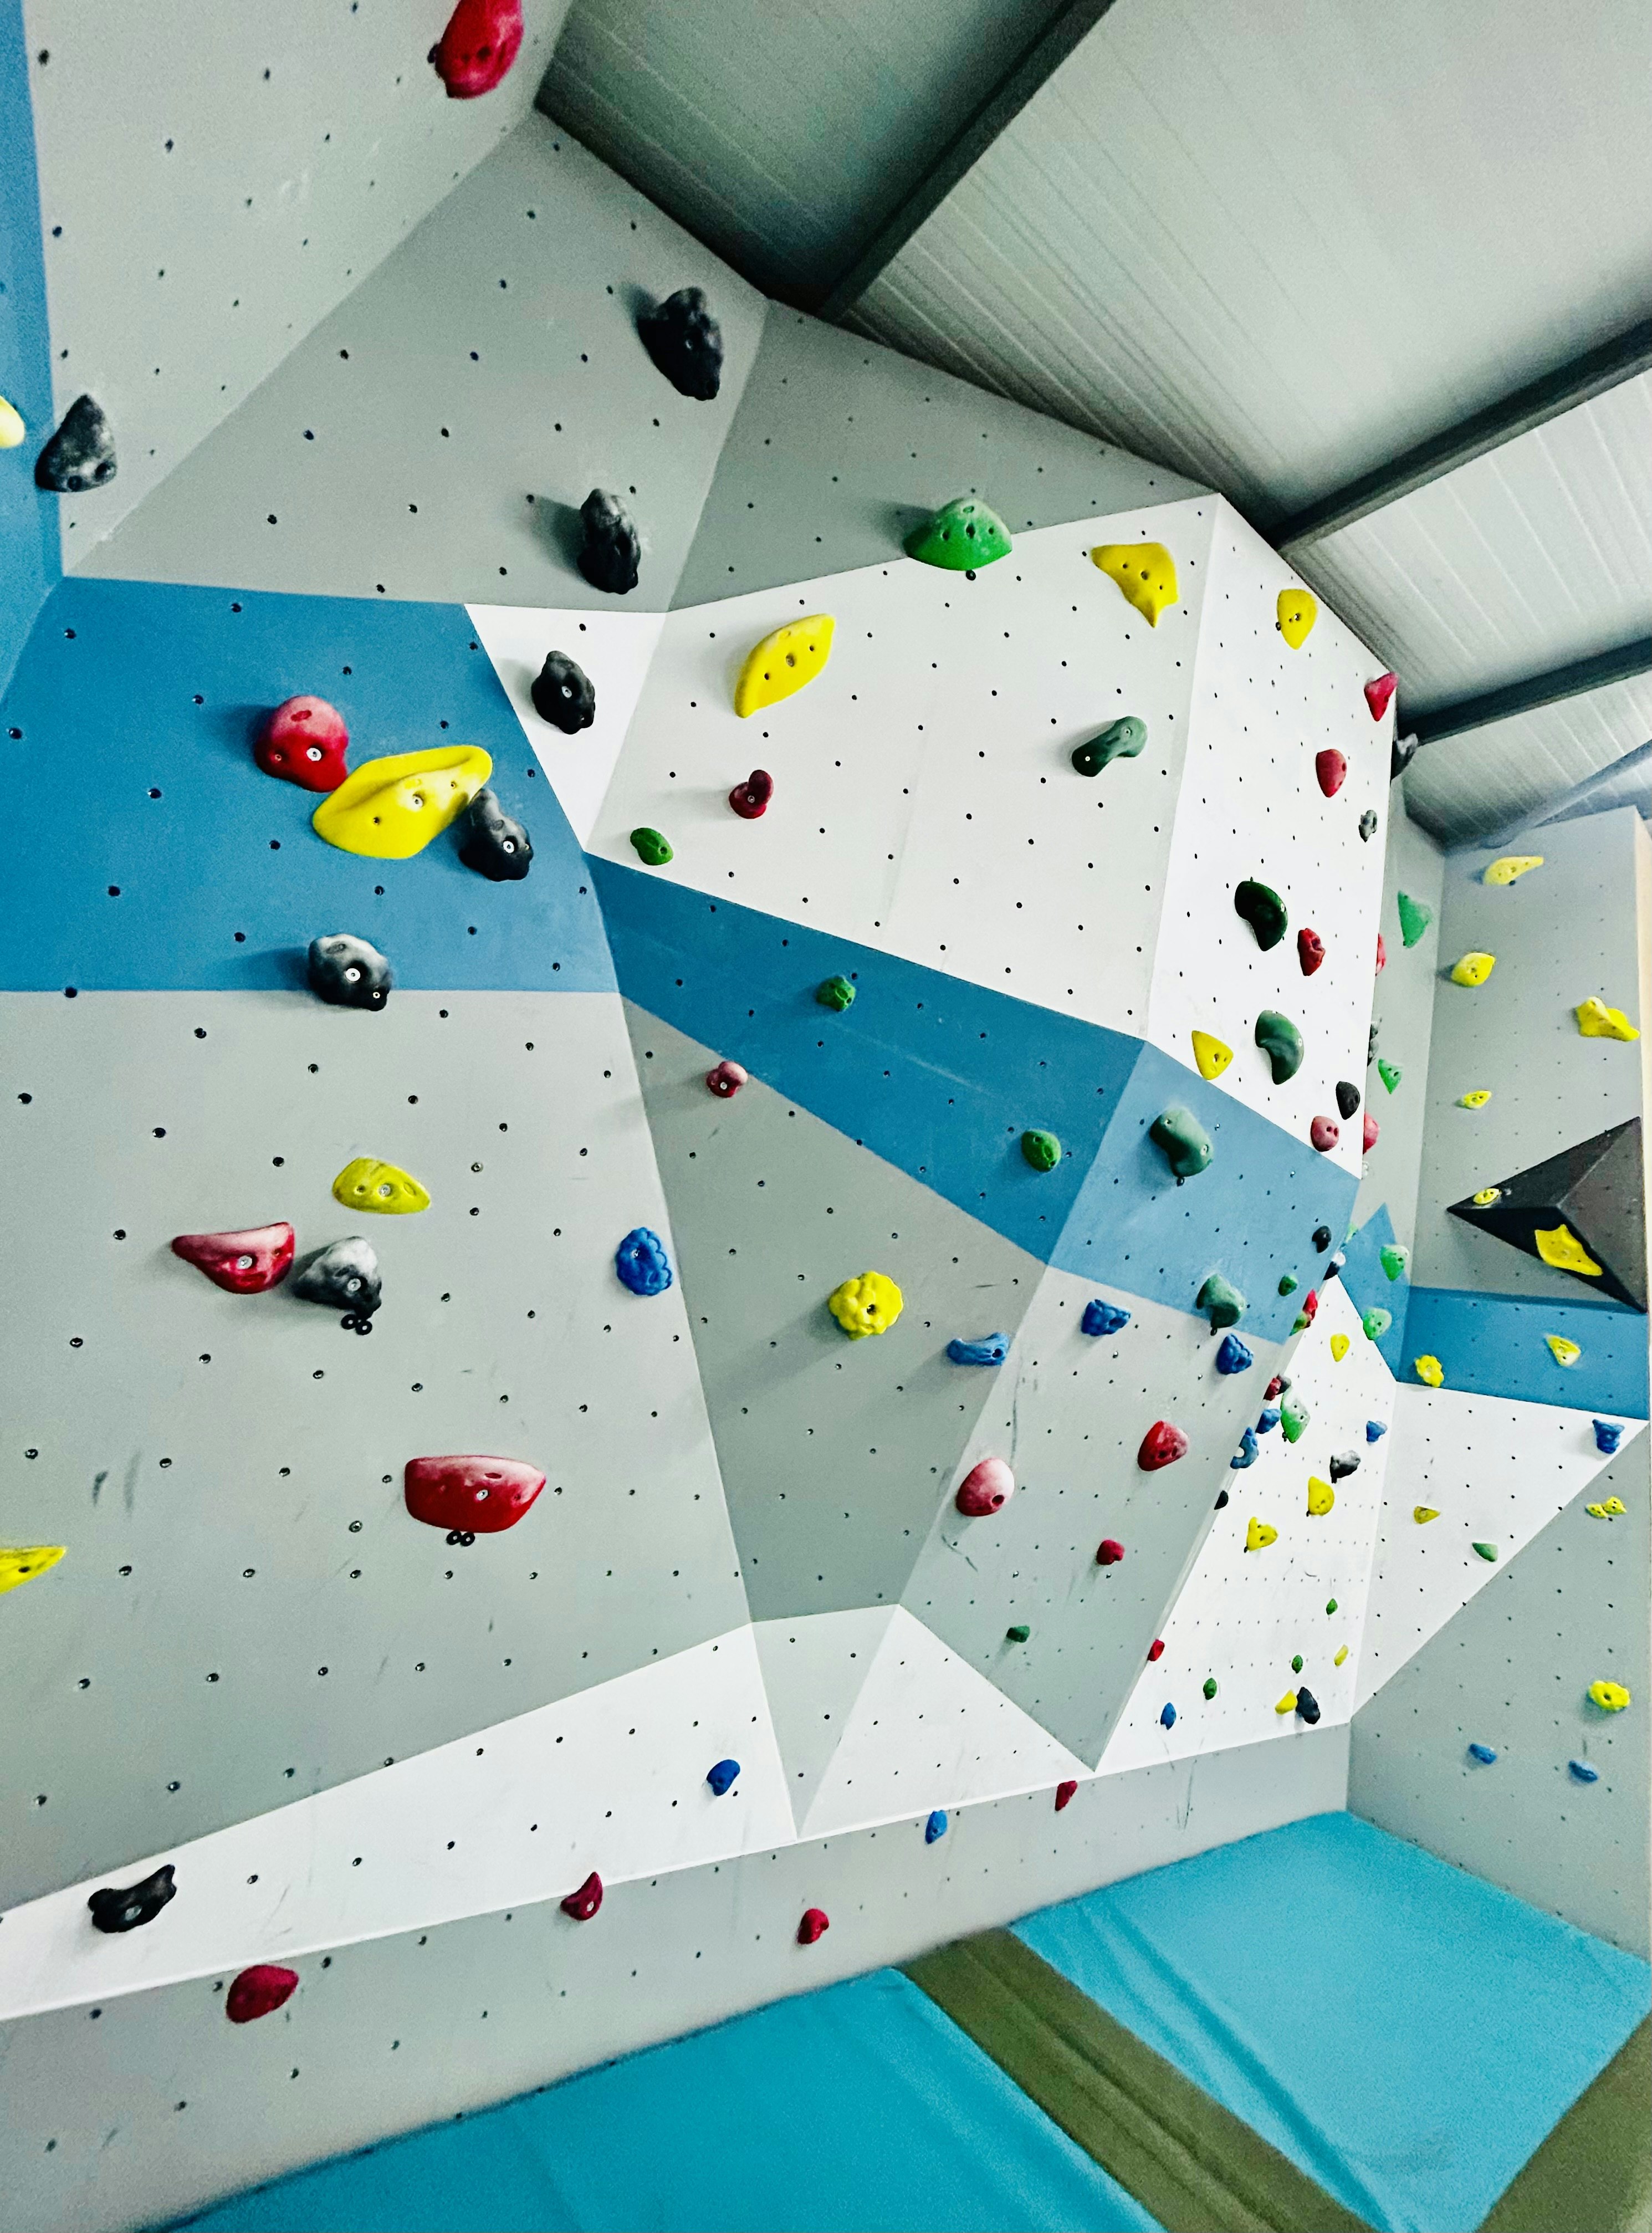 An indoor climbing wall